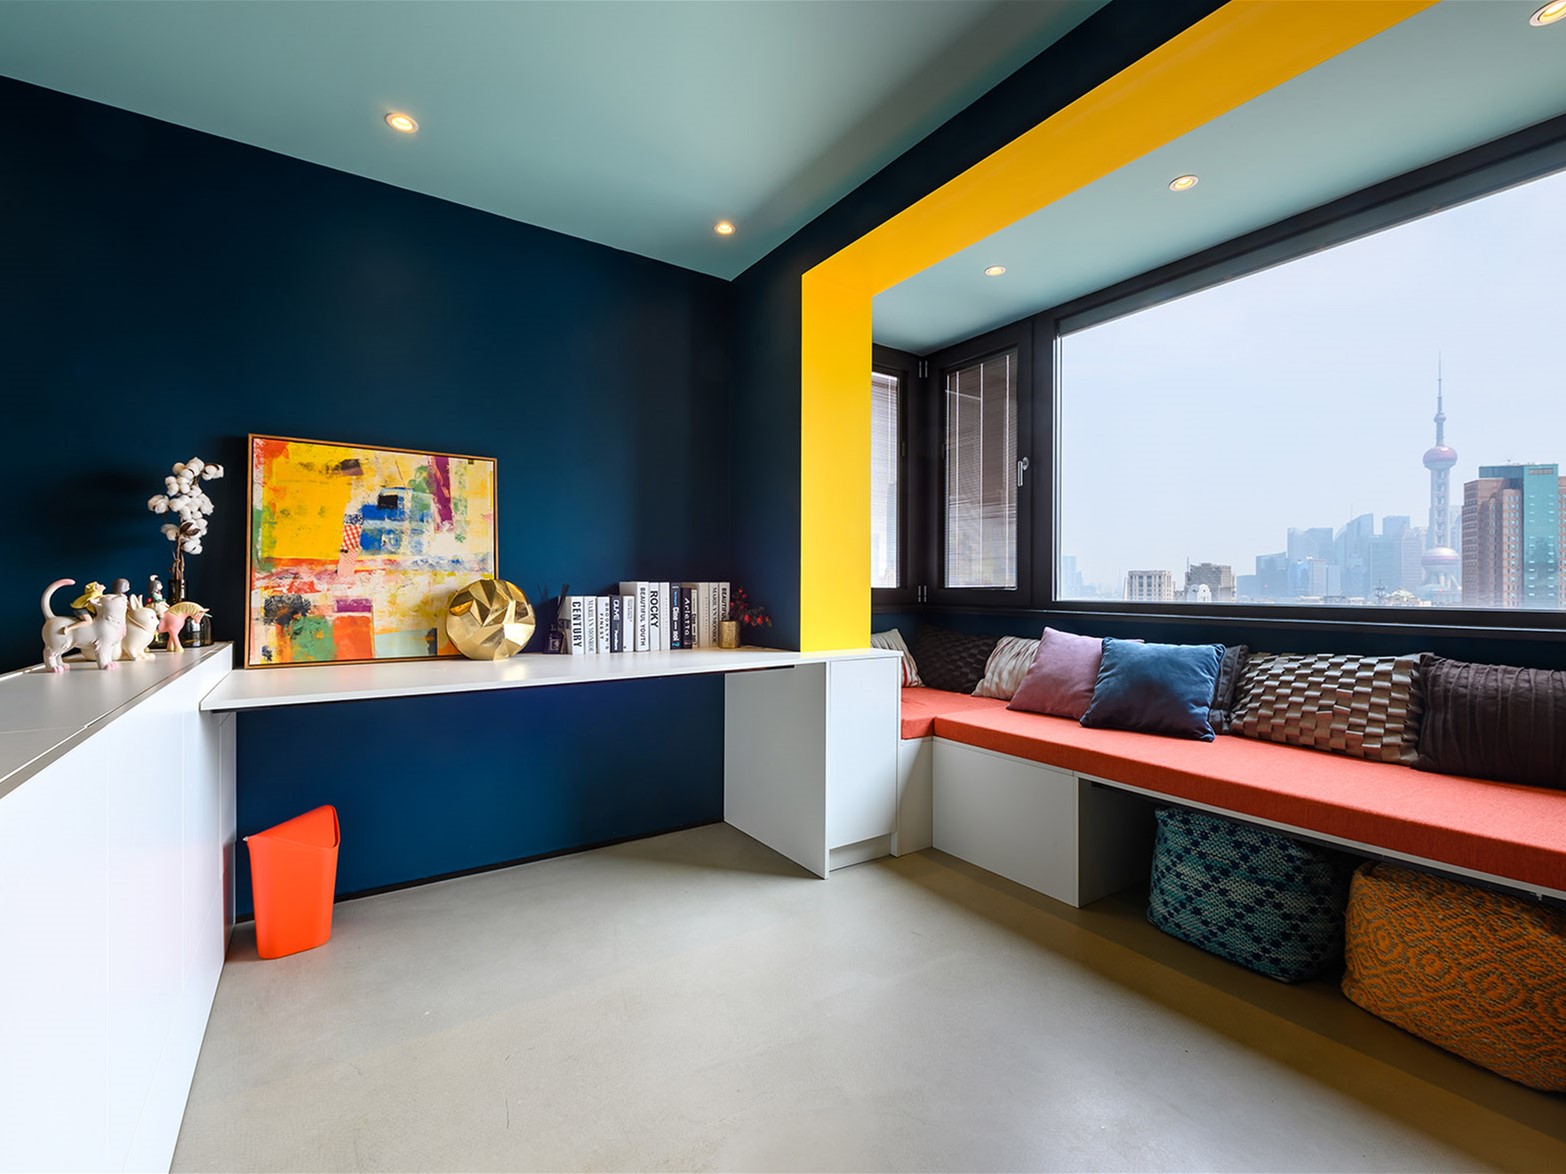 上海松柏公寓改造——跳跃色彩搭配